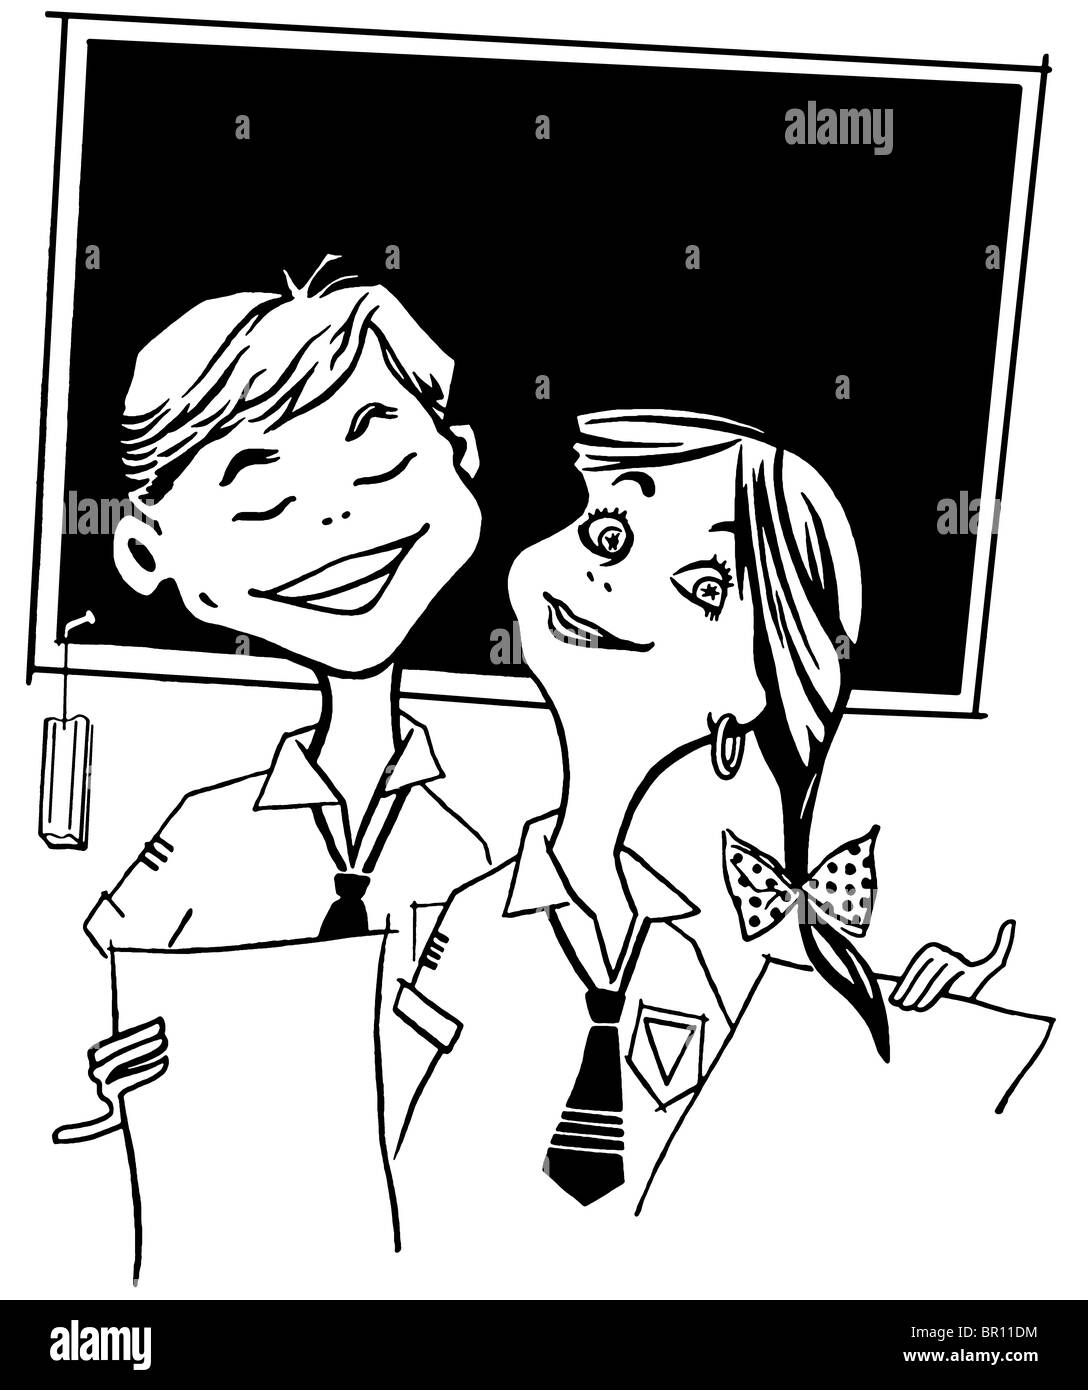 Une version noir et blanc d'une illustration de deux jeunes enfants de l'école Banque D'Images